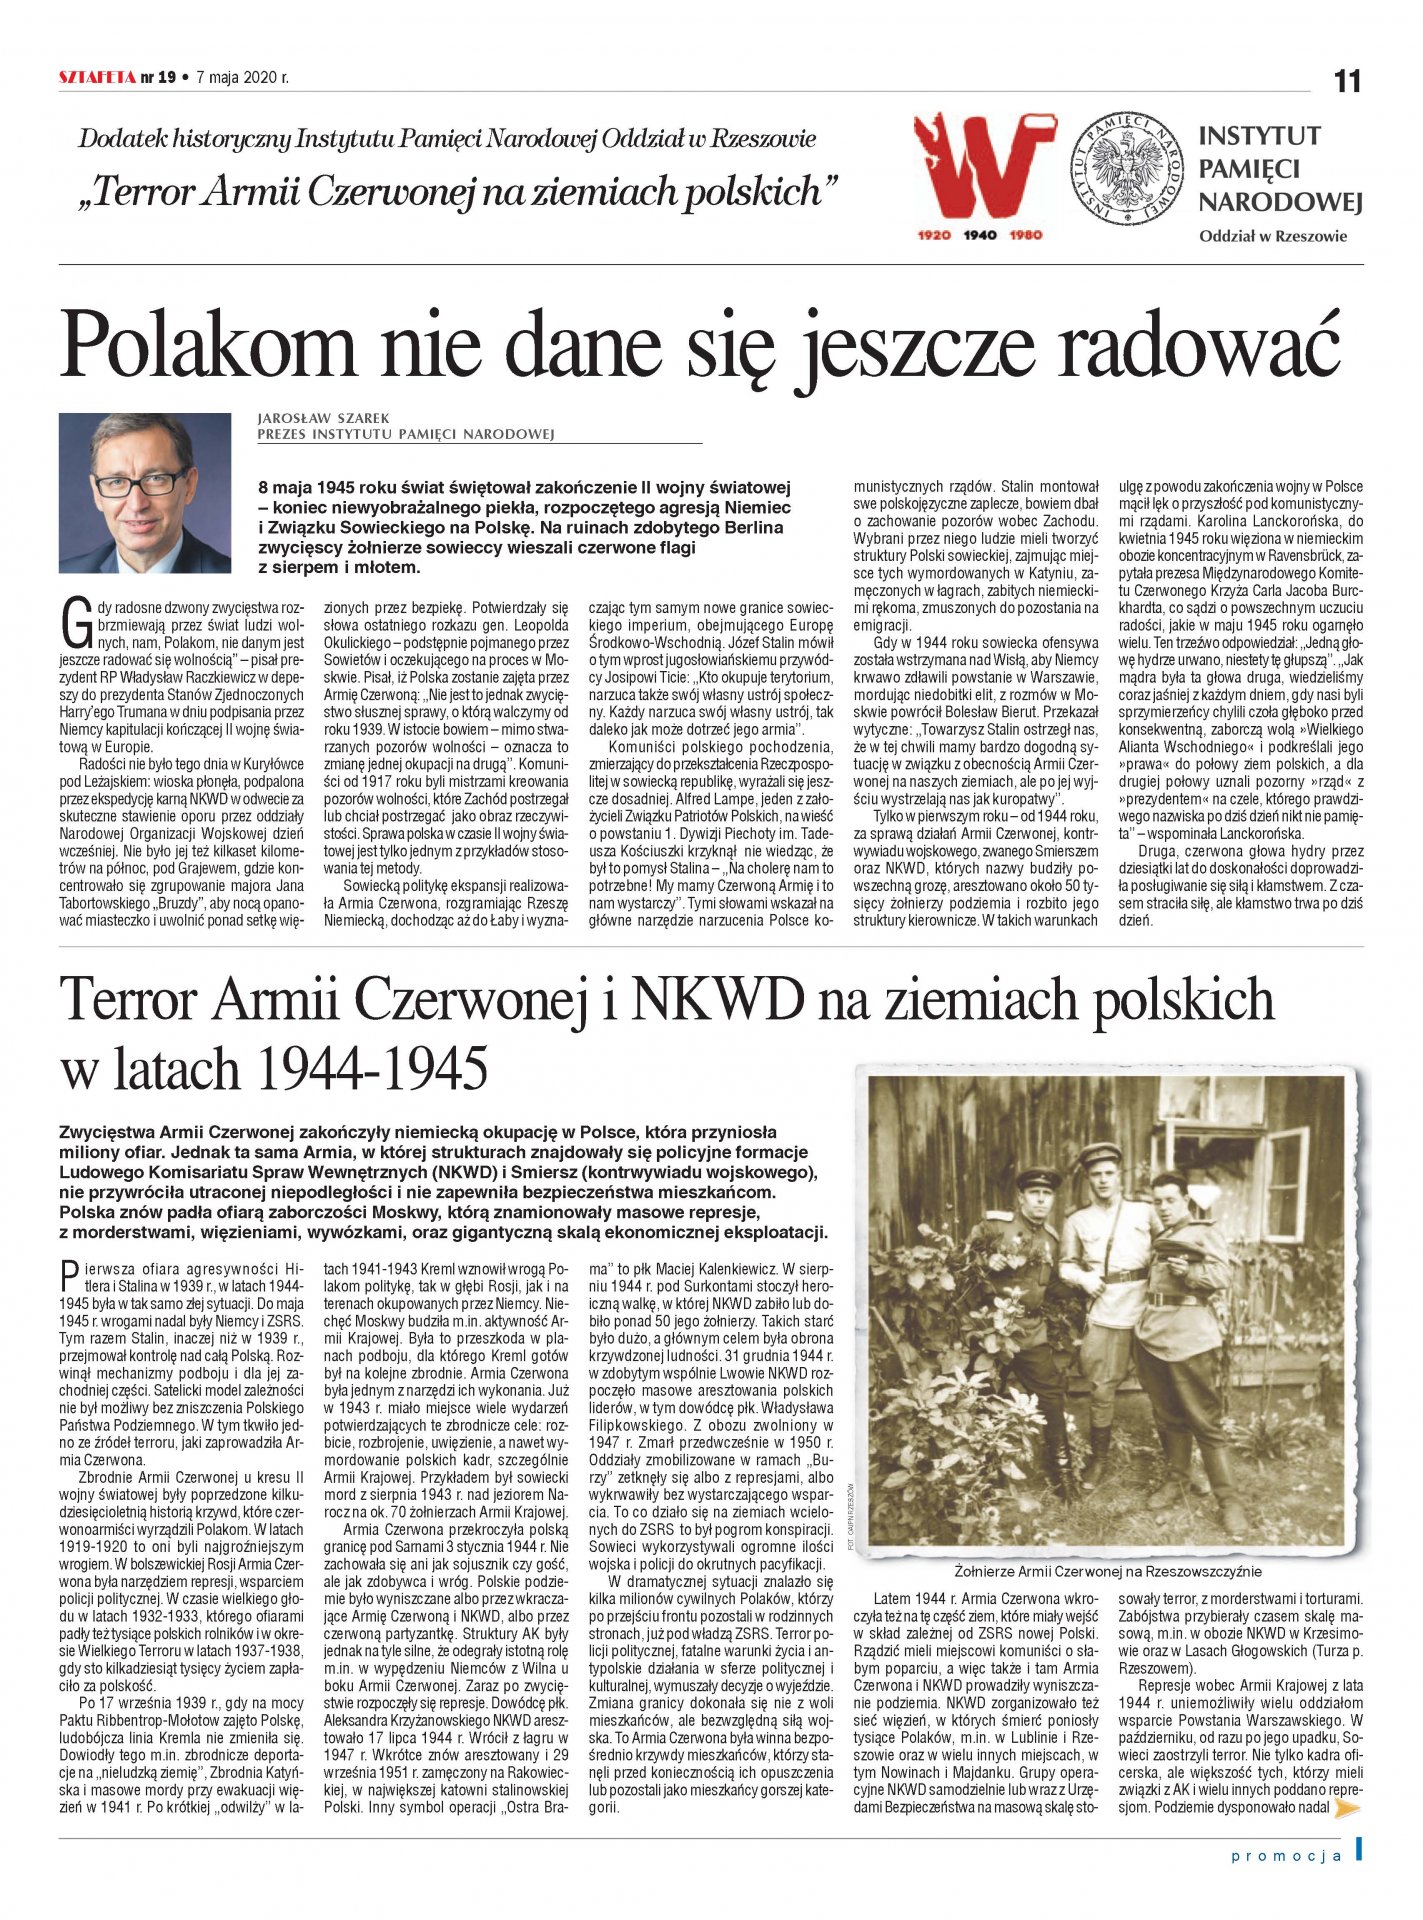 „Terror Armii Czerwonej na ziemiach polskich” – dodatek historyczny Oddziału IPN w Rzeszowie - okładka